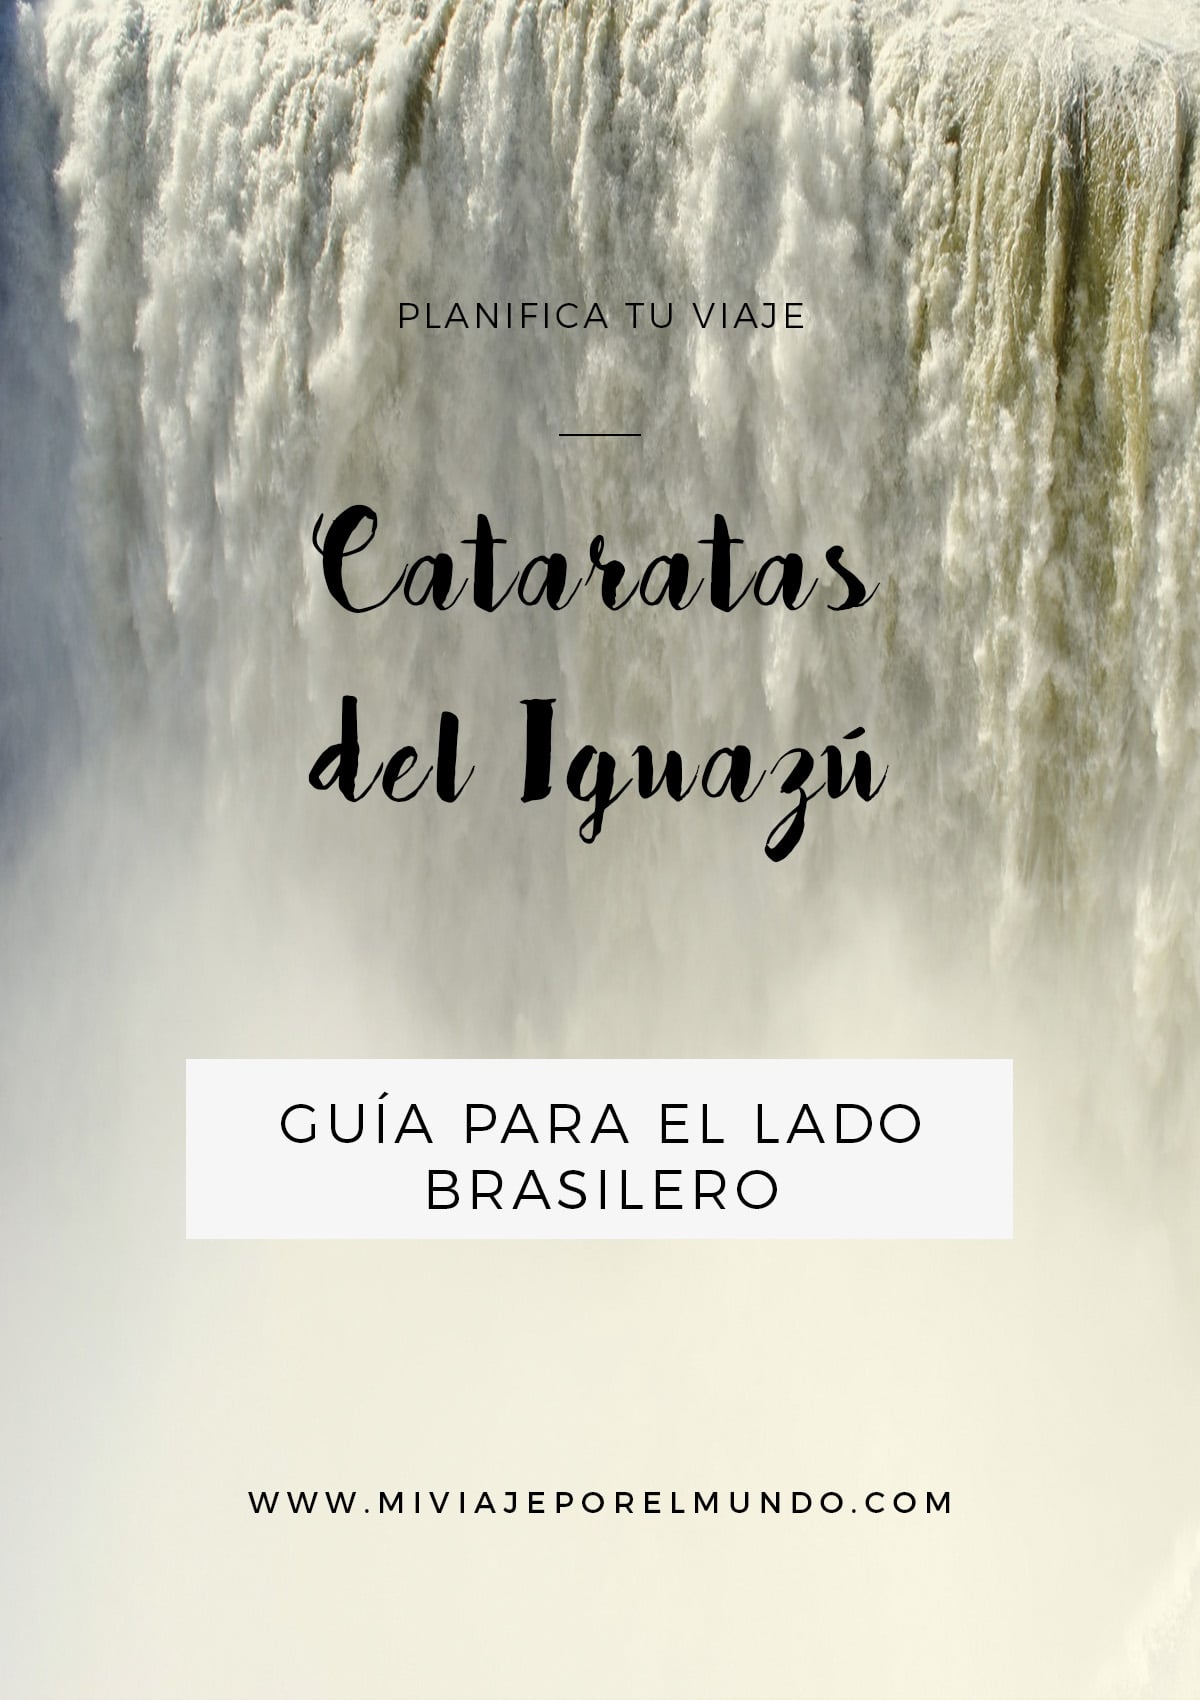 Cómo organizar un viaje a las Cataratas del Iguazú de lado brasilero